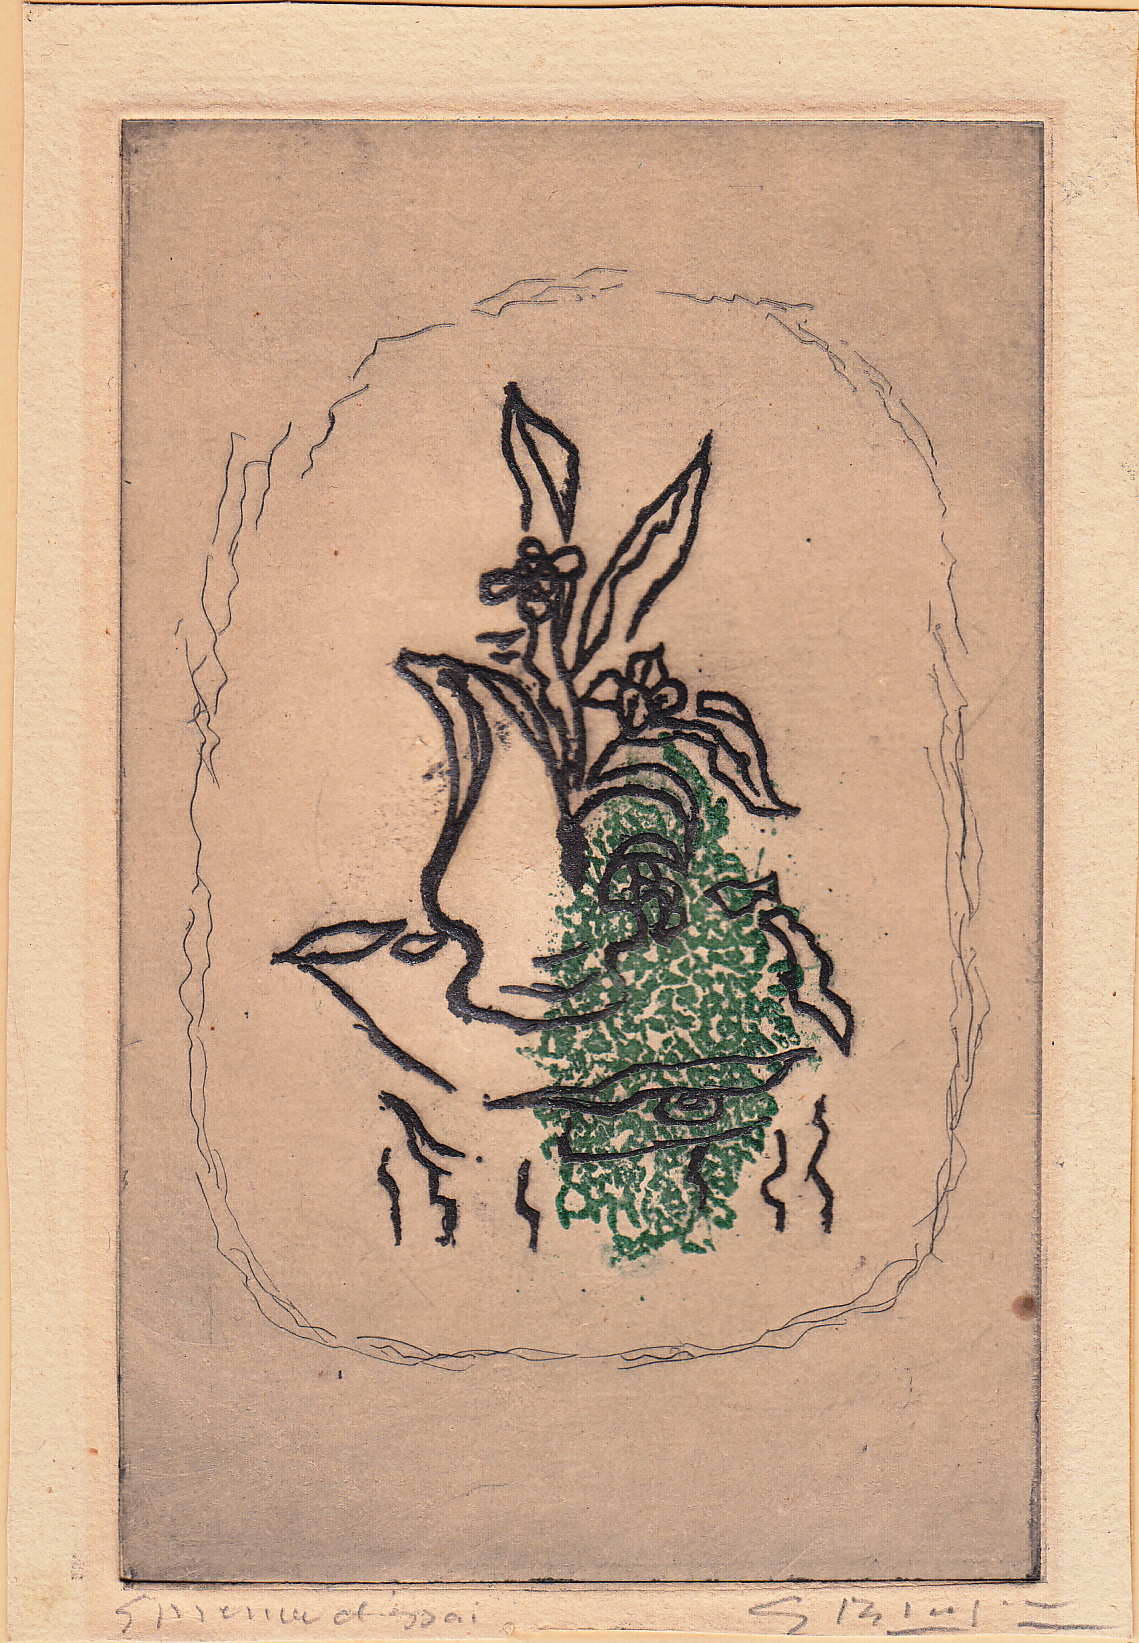 Braque, Bouquet Vert, etching, 1951